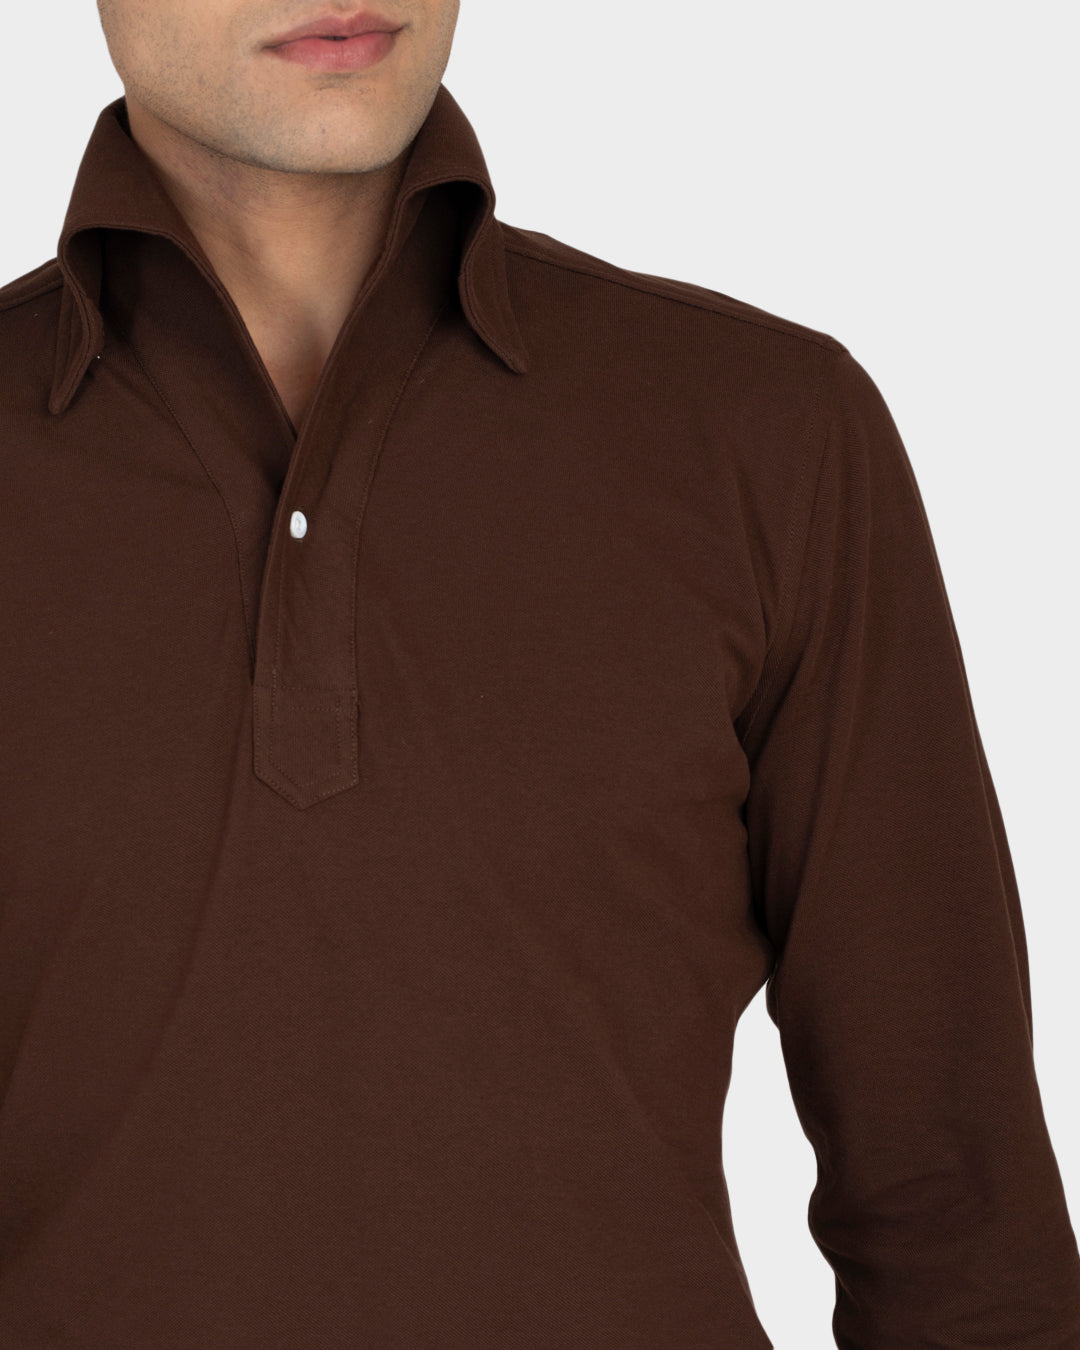 Brown Pique Polo T-Shirt